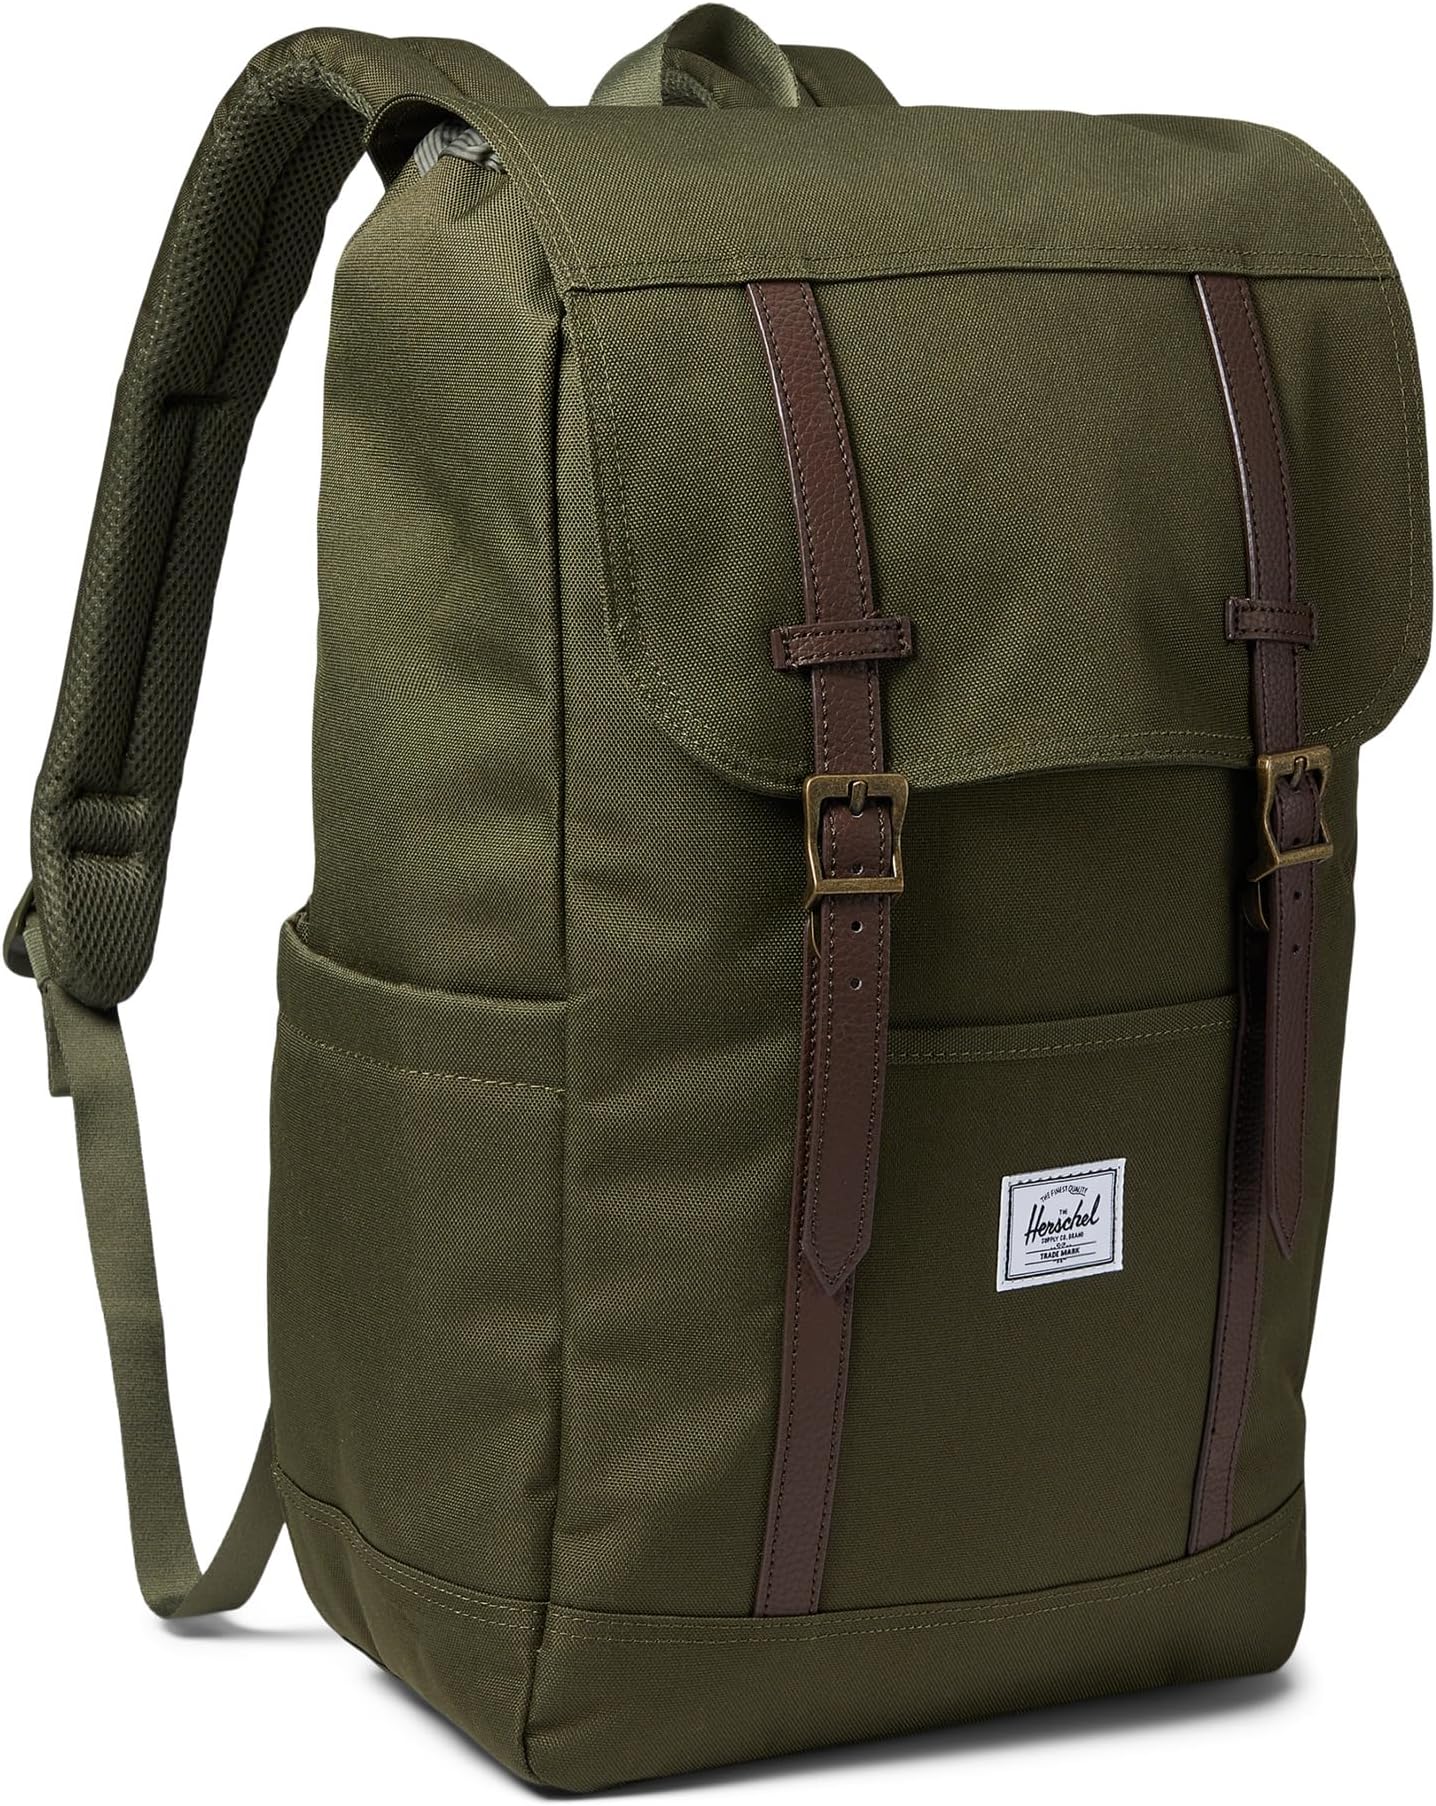 рюкзак classic x large herschel supply co цвет ivy green Рюкзак Retreat Backpack Herschel Supply Co., цвет Ivy Green